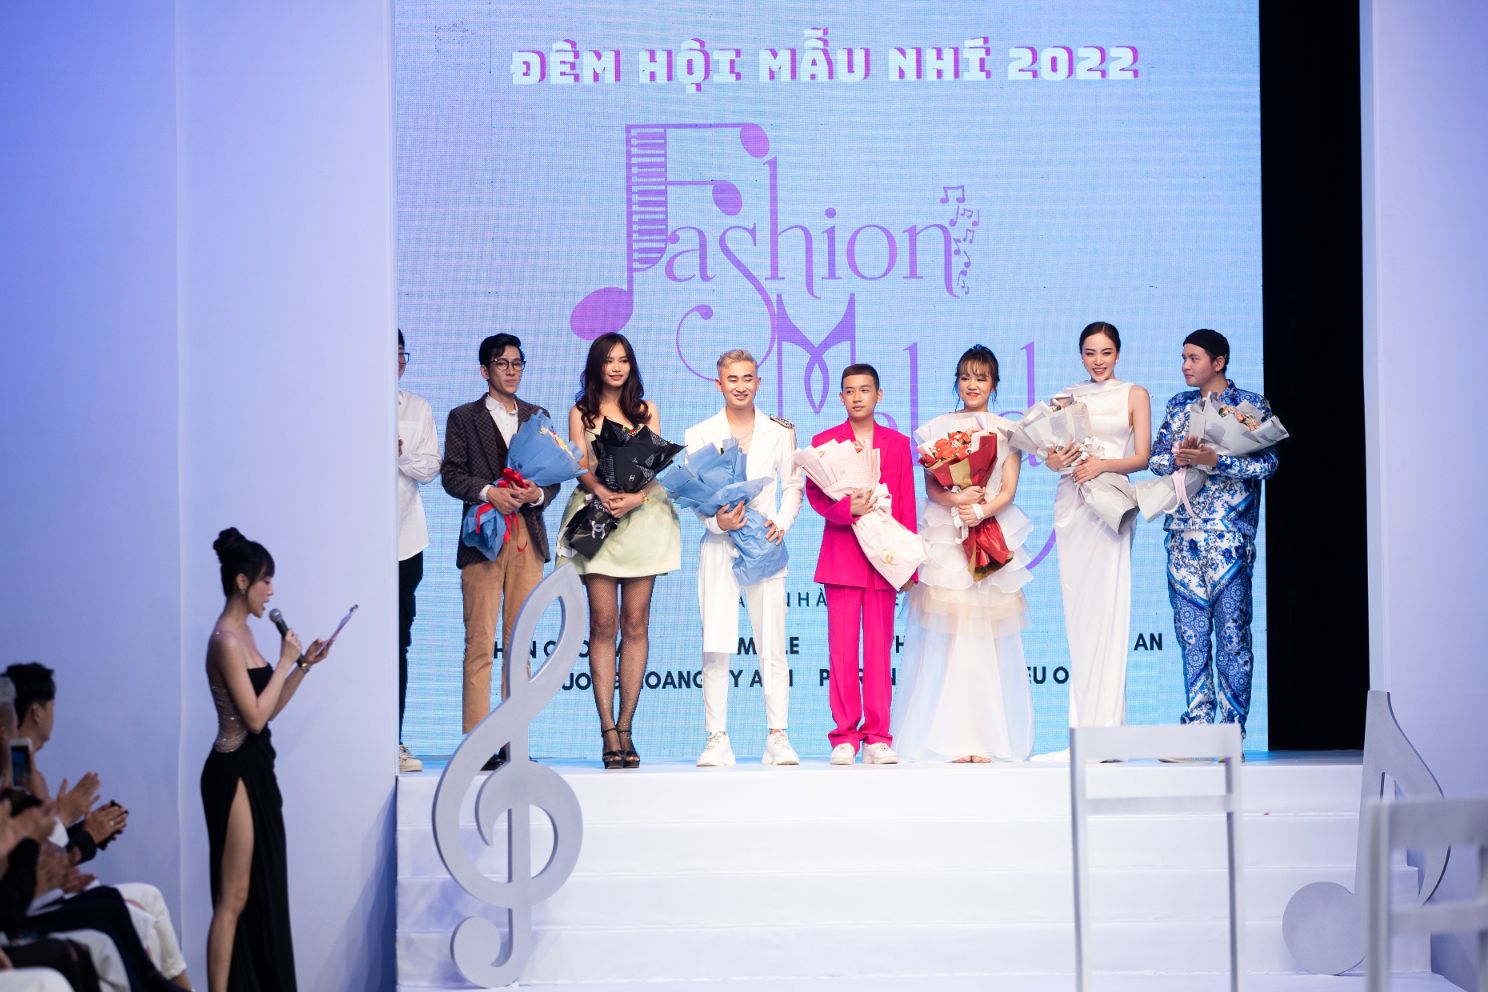 7 NTK tham du Fashion Melody Gần 150 mẫu thiết kế được trình diễn tại Đêm hội mẫu nhí 2022   Fashion Melody